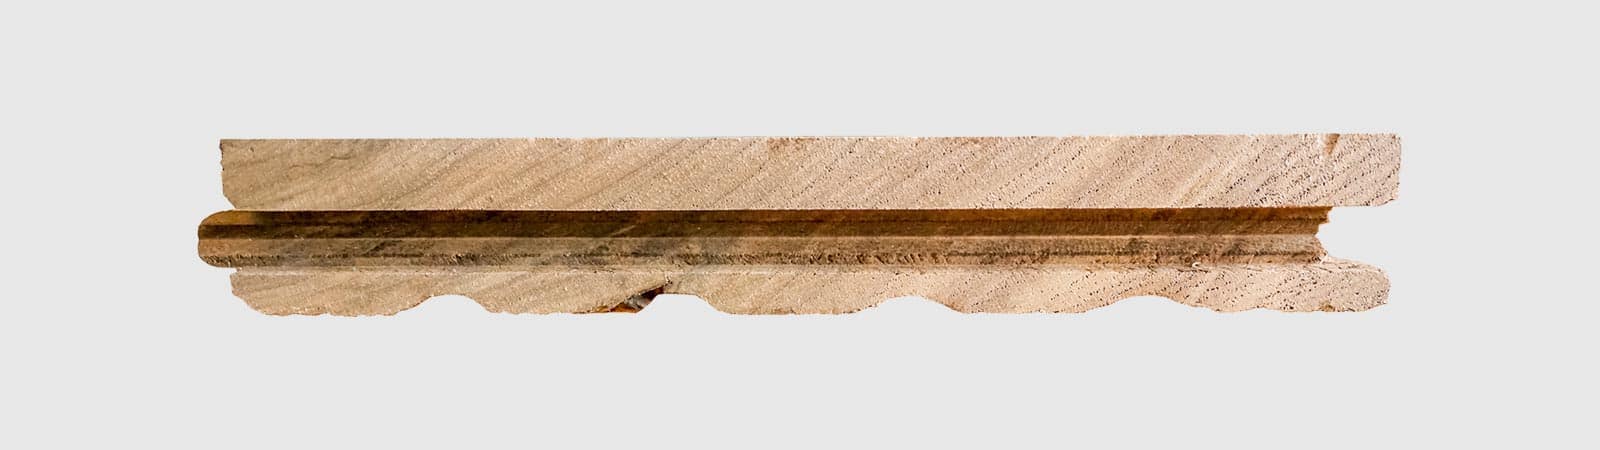 hardwood flooring profile